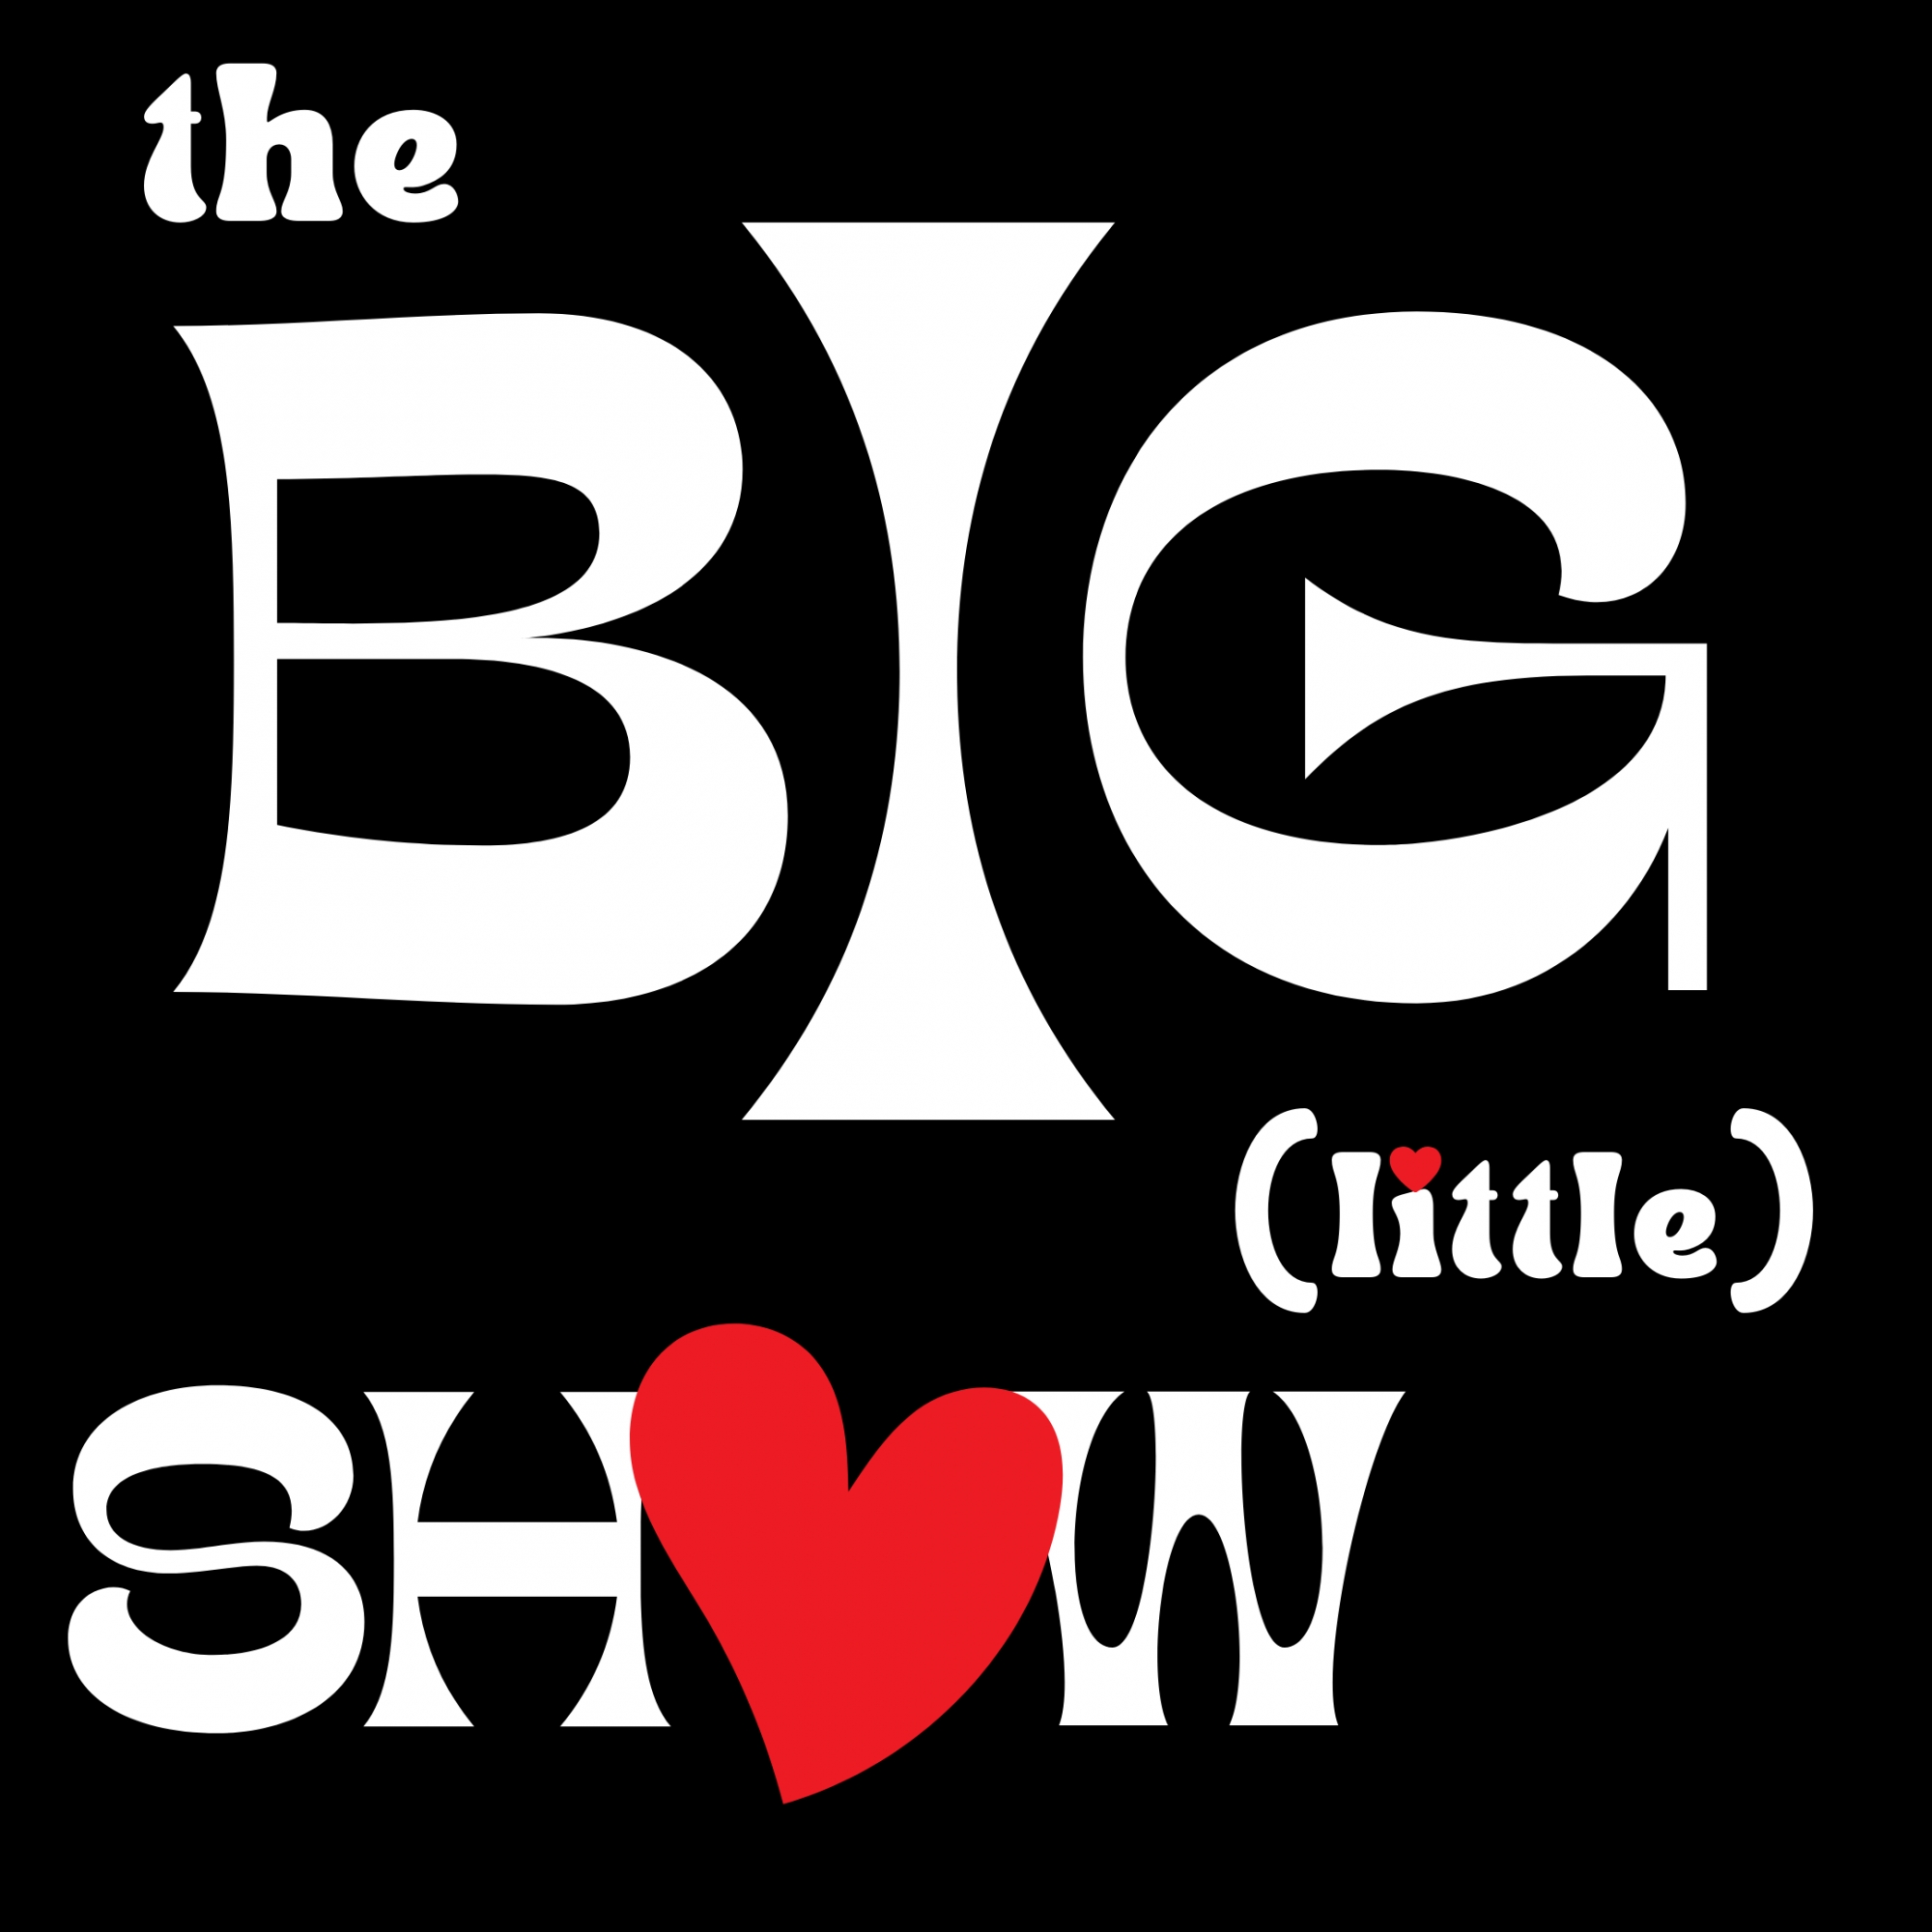 Dec '22 The Big (little) Show - Show 10